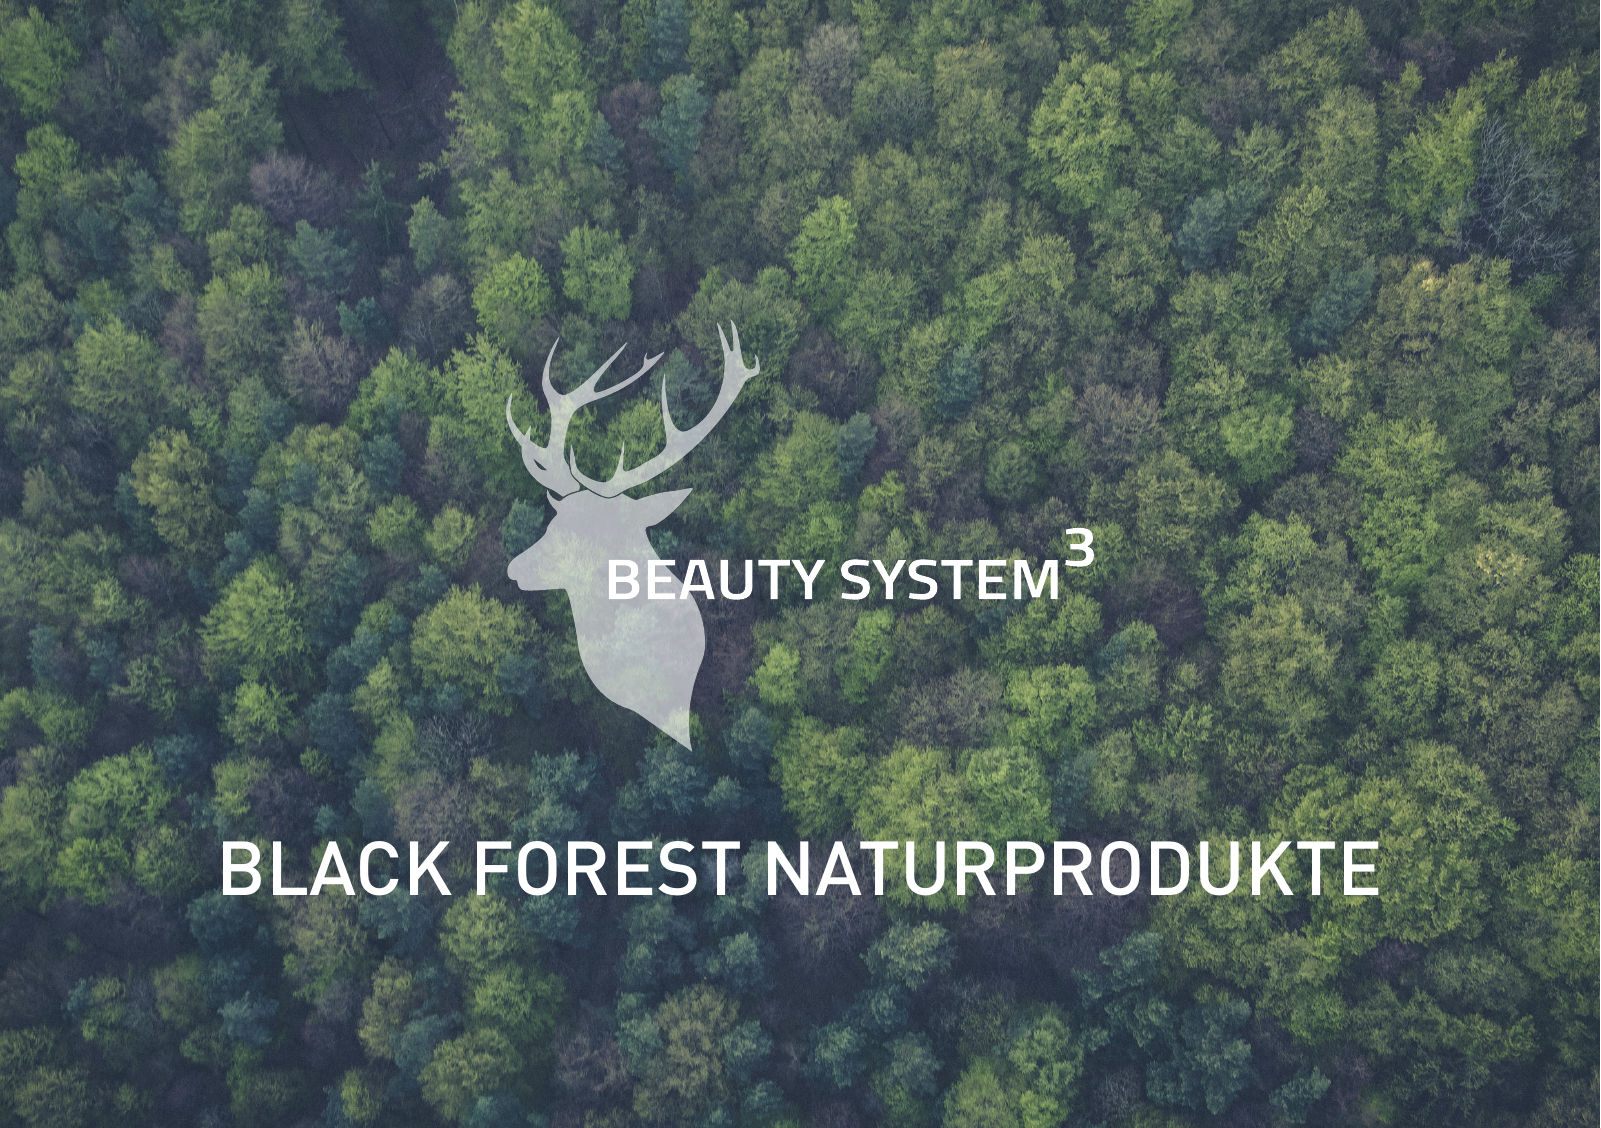 Vorschau 190716_beauty-system_black-forest-naturprodukte Seite 1